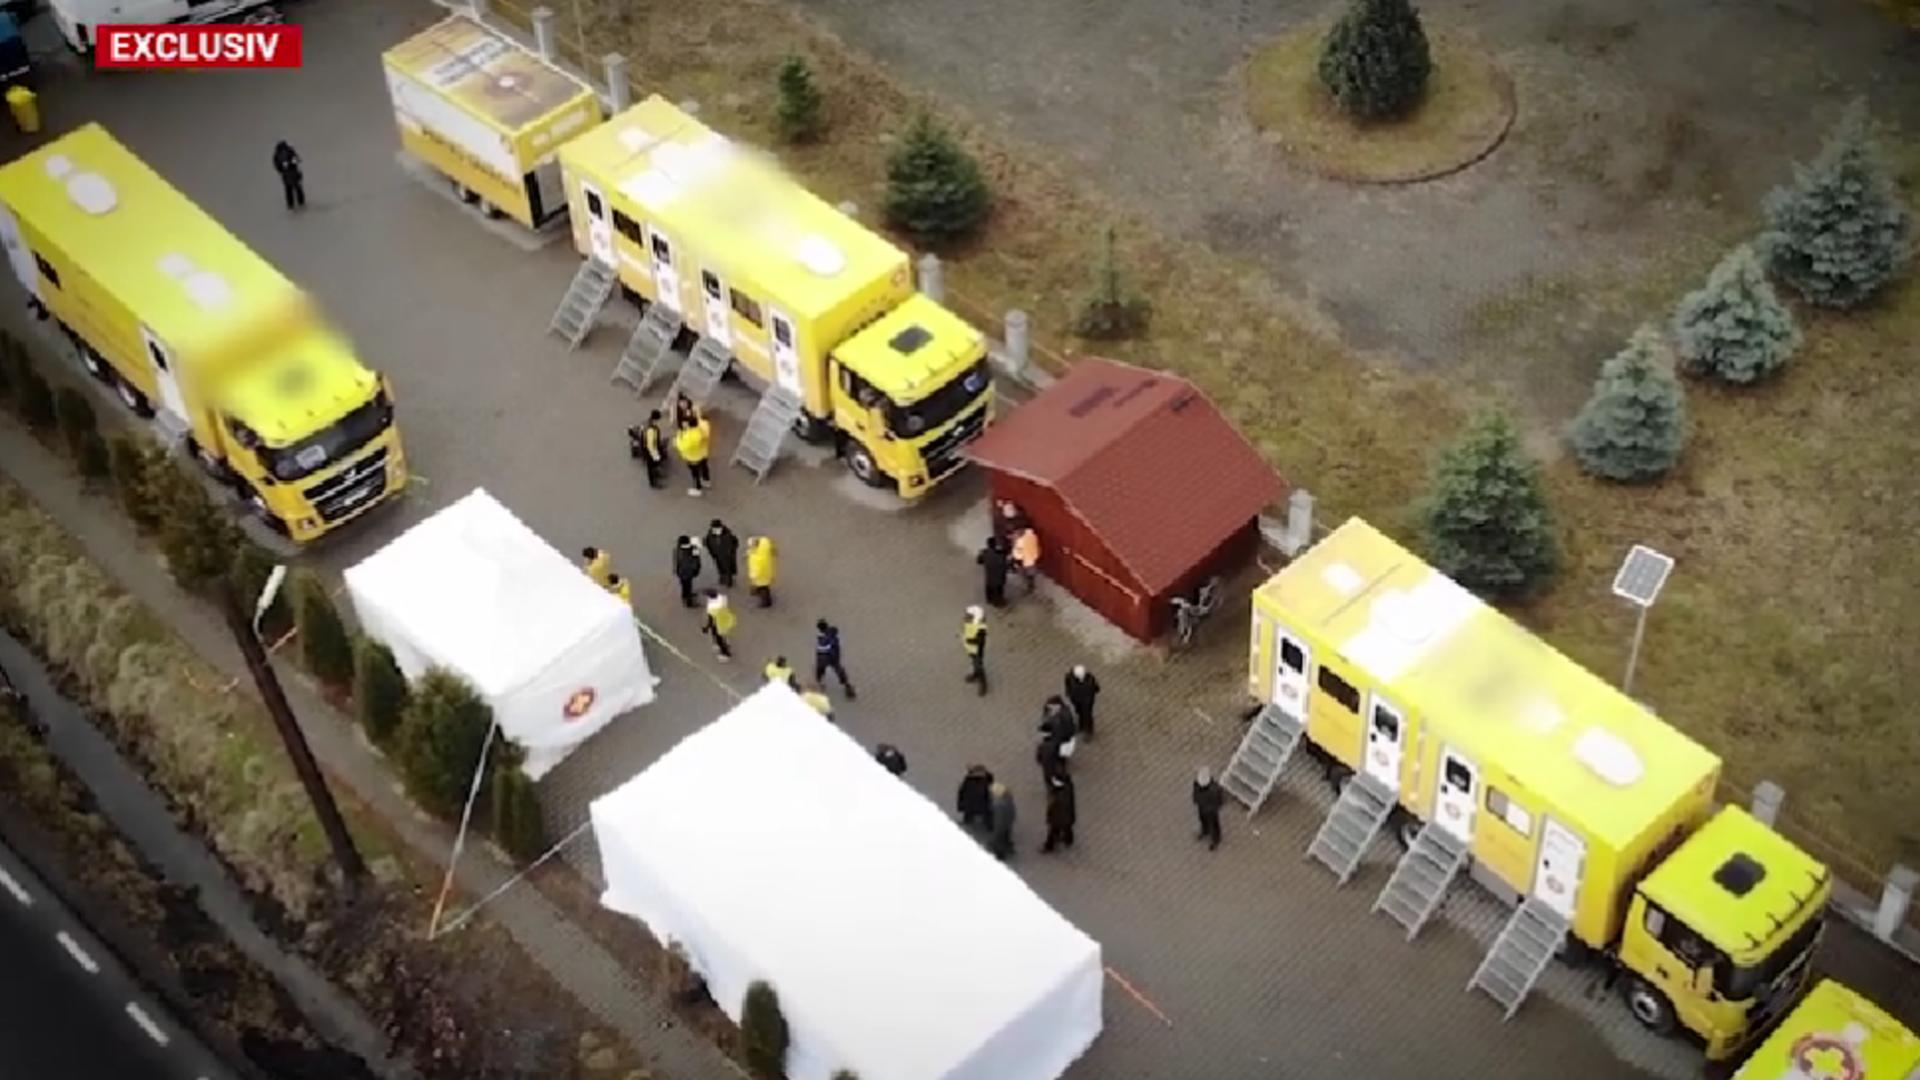 Servicii medicale gratuite pentru sute de mureșeni: Caravana Medicală a bifat primele două locații din Mureș 